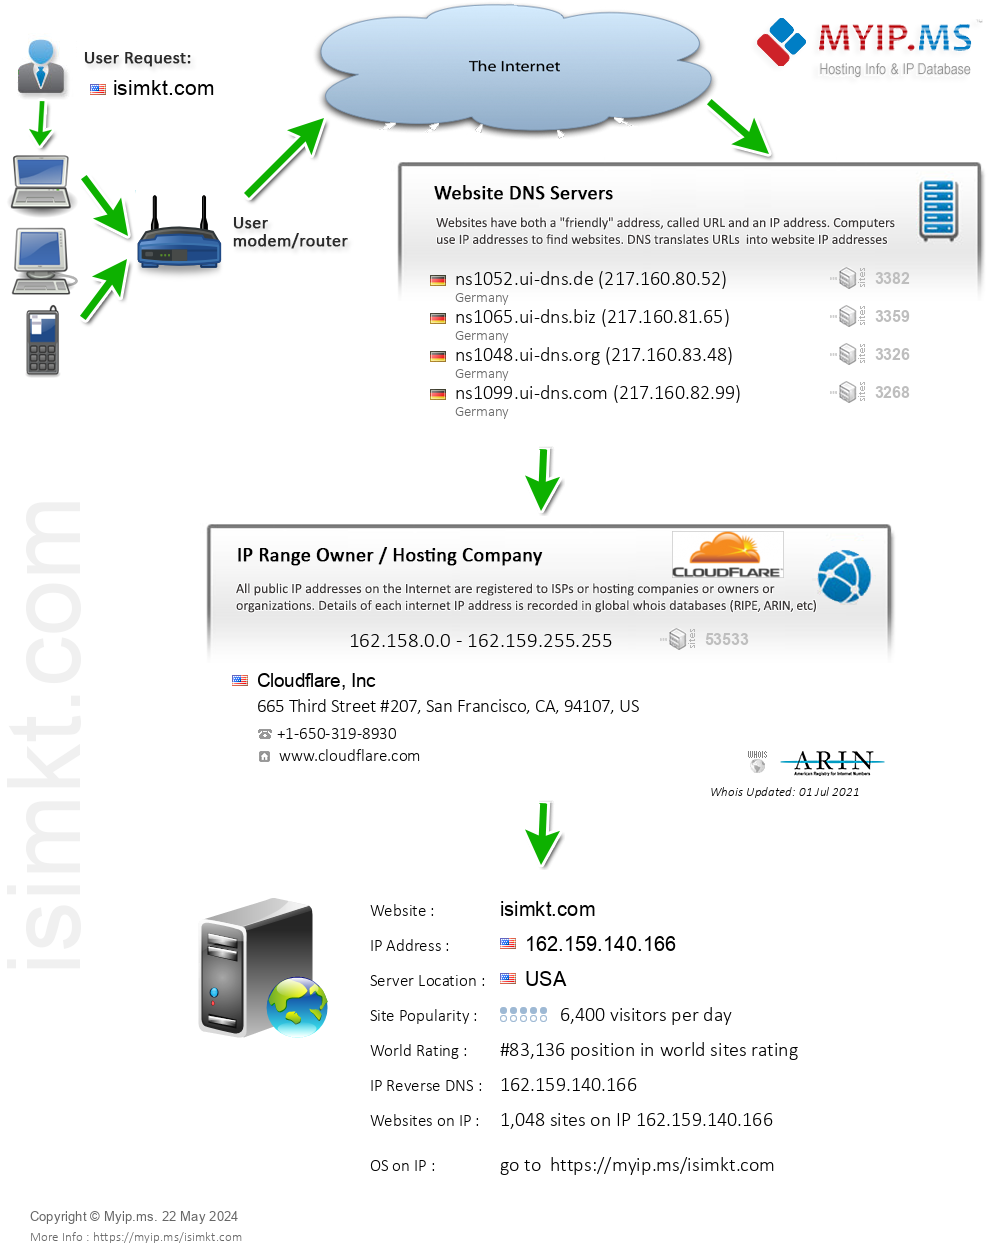 Isimkt.com - Website Hosting Visual IP Diagram